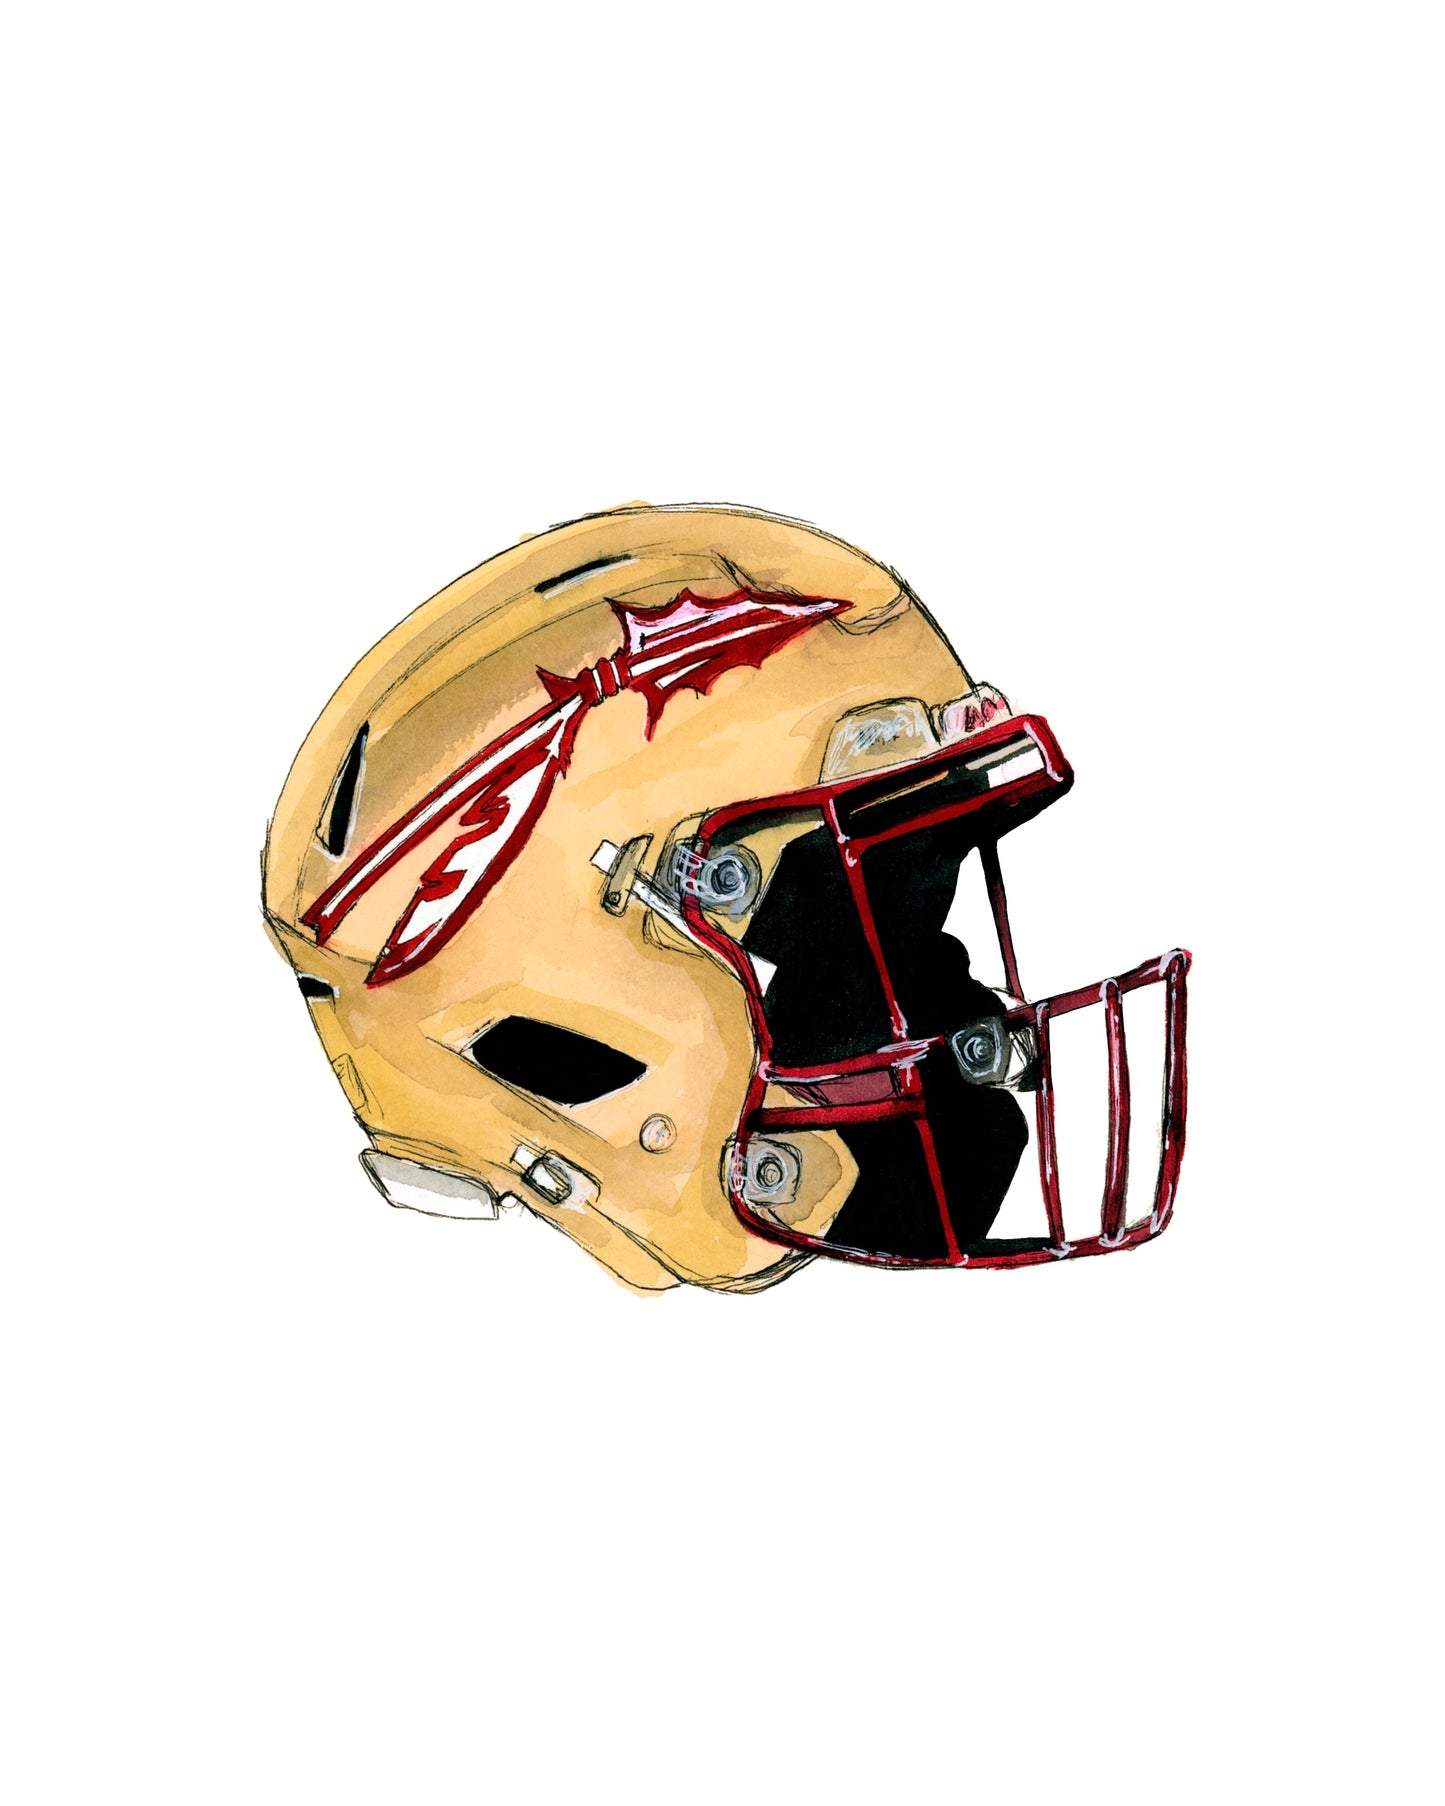 Florida State University Football Helmet Print